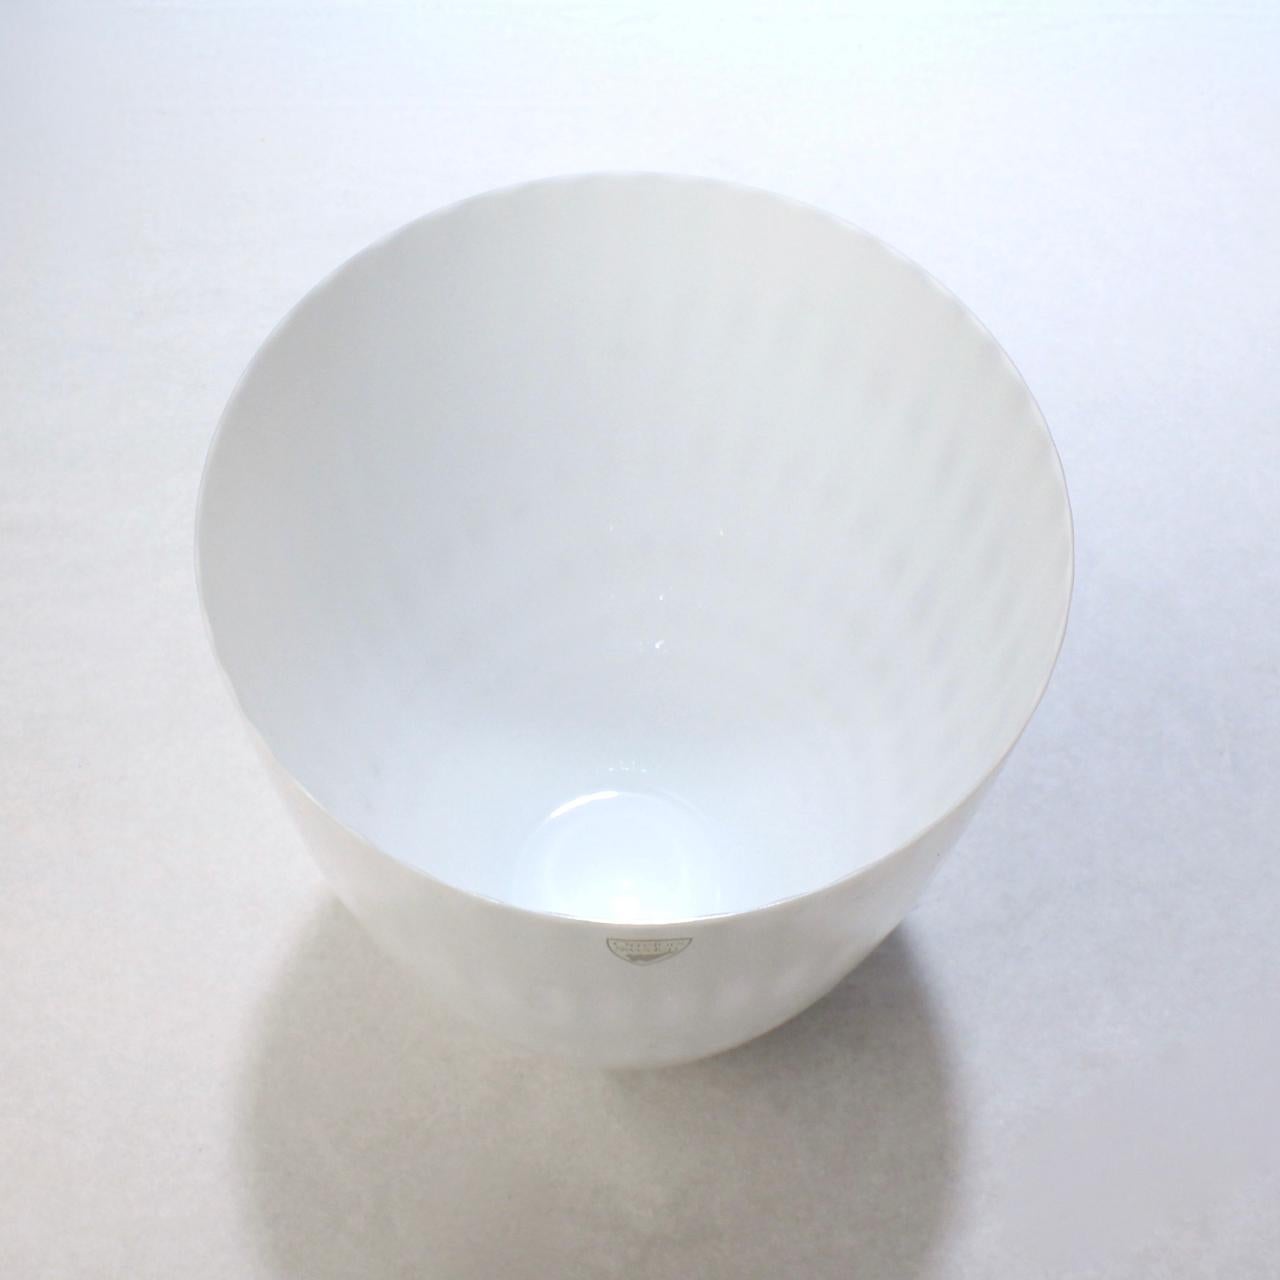 Swedish Snöljus Snowlight White Art Glass Vase by Ingegerd Råman for Orrefors For Sale